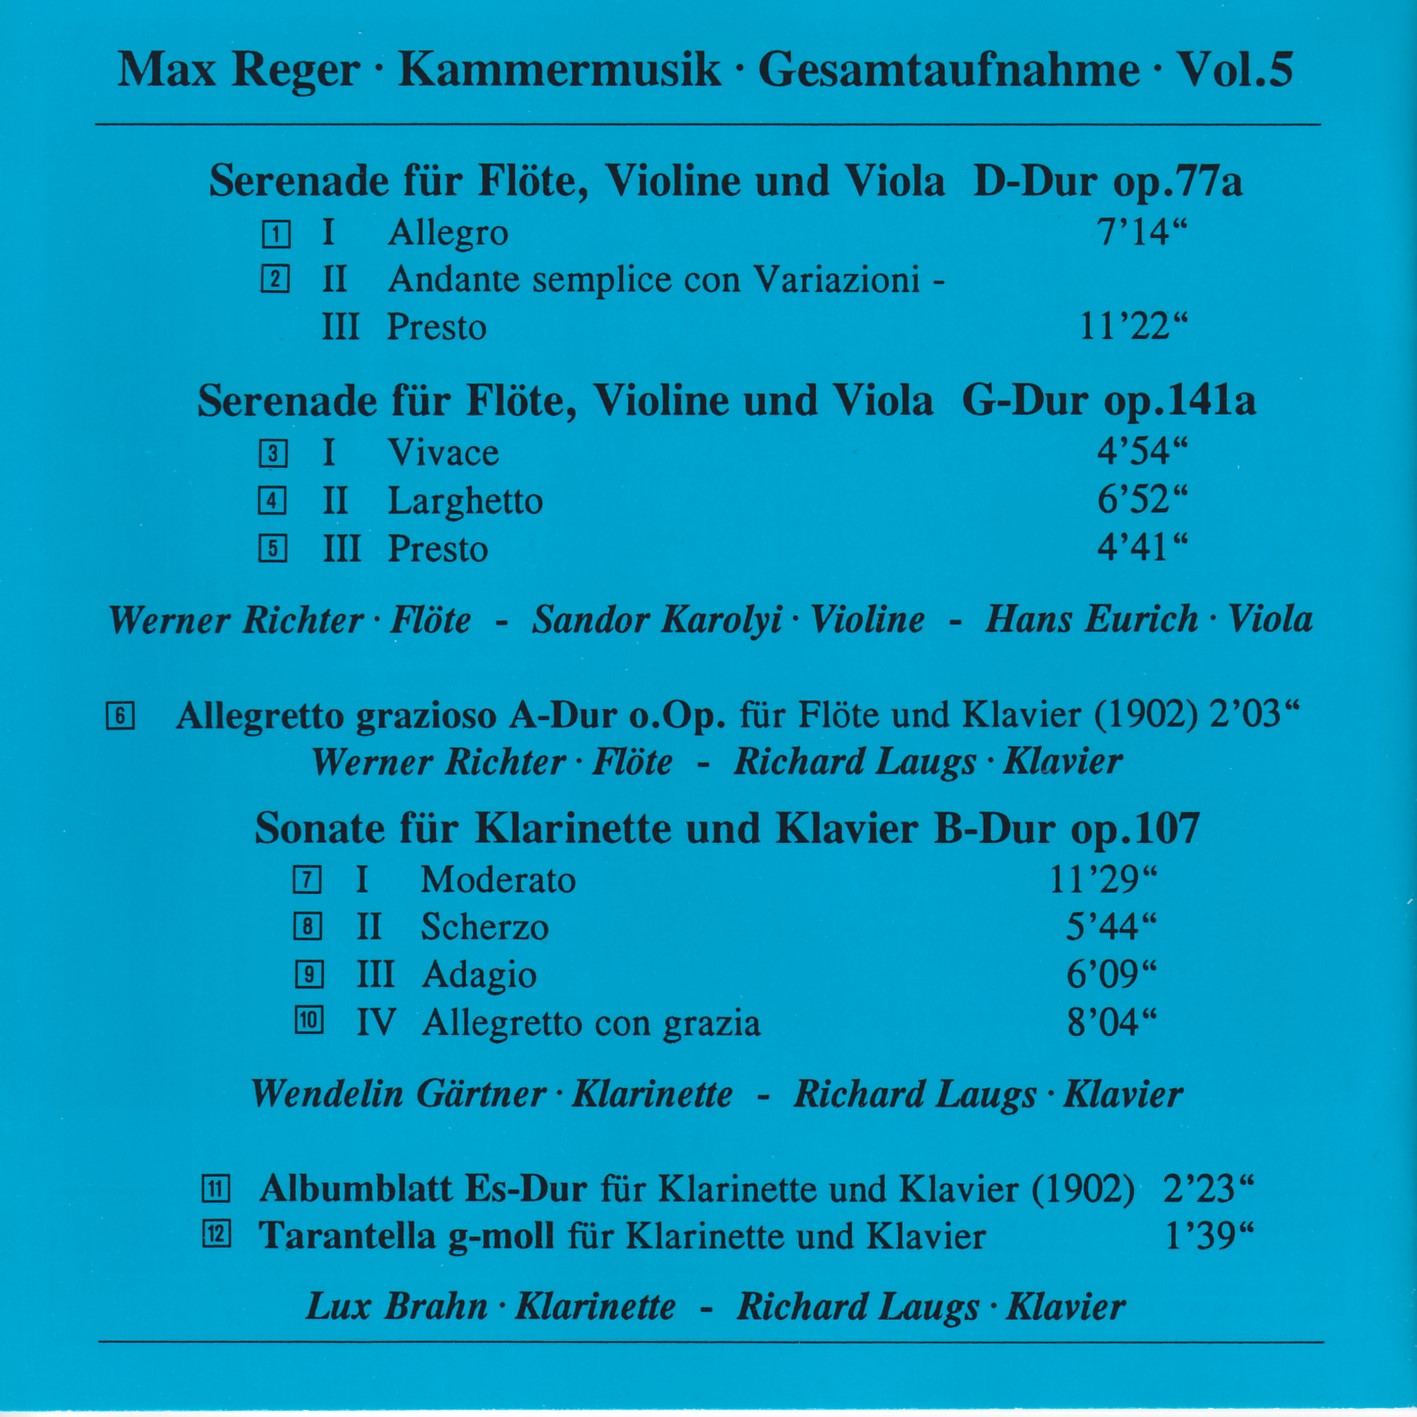 Max Reger - Kammermusik komplett Vol. 5